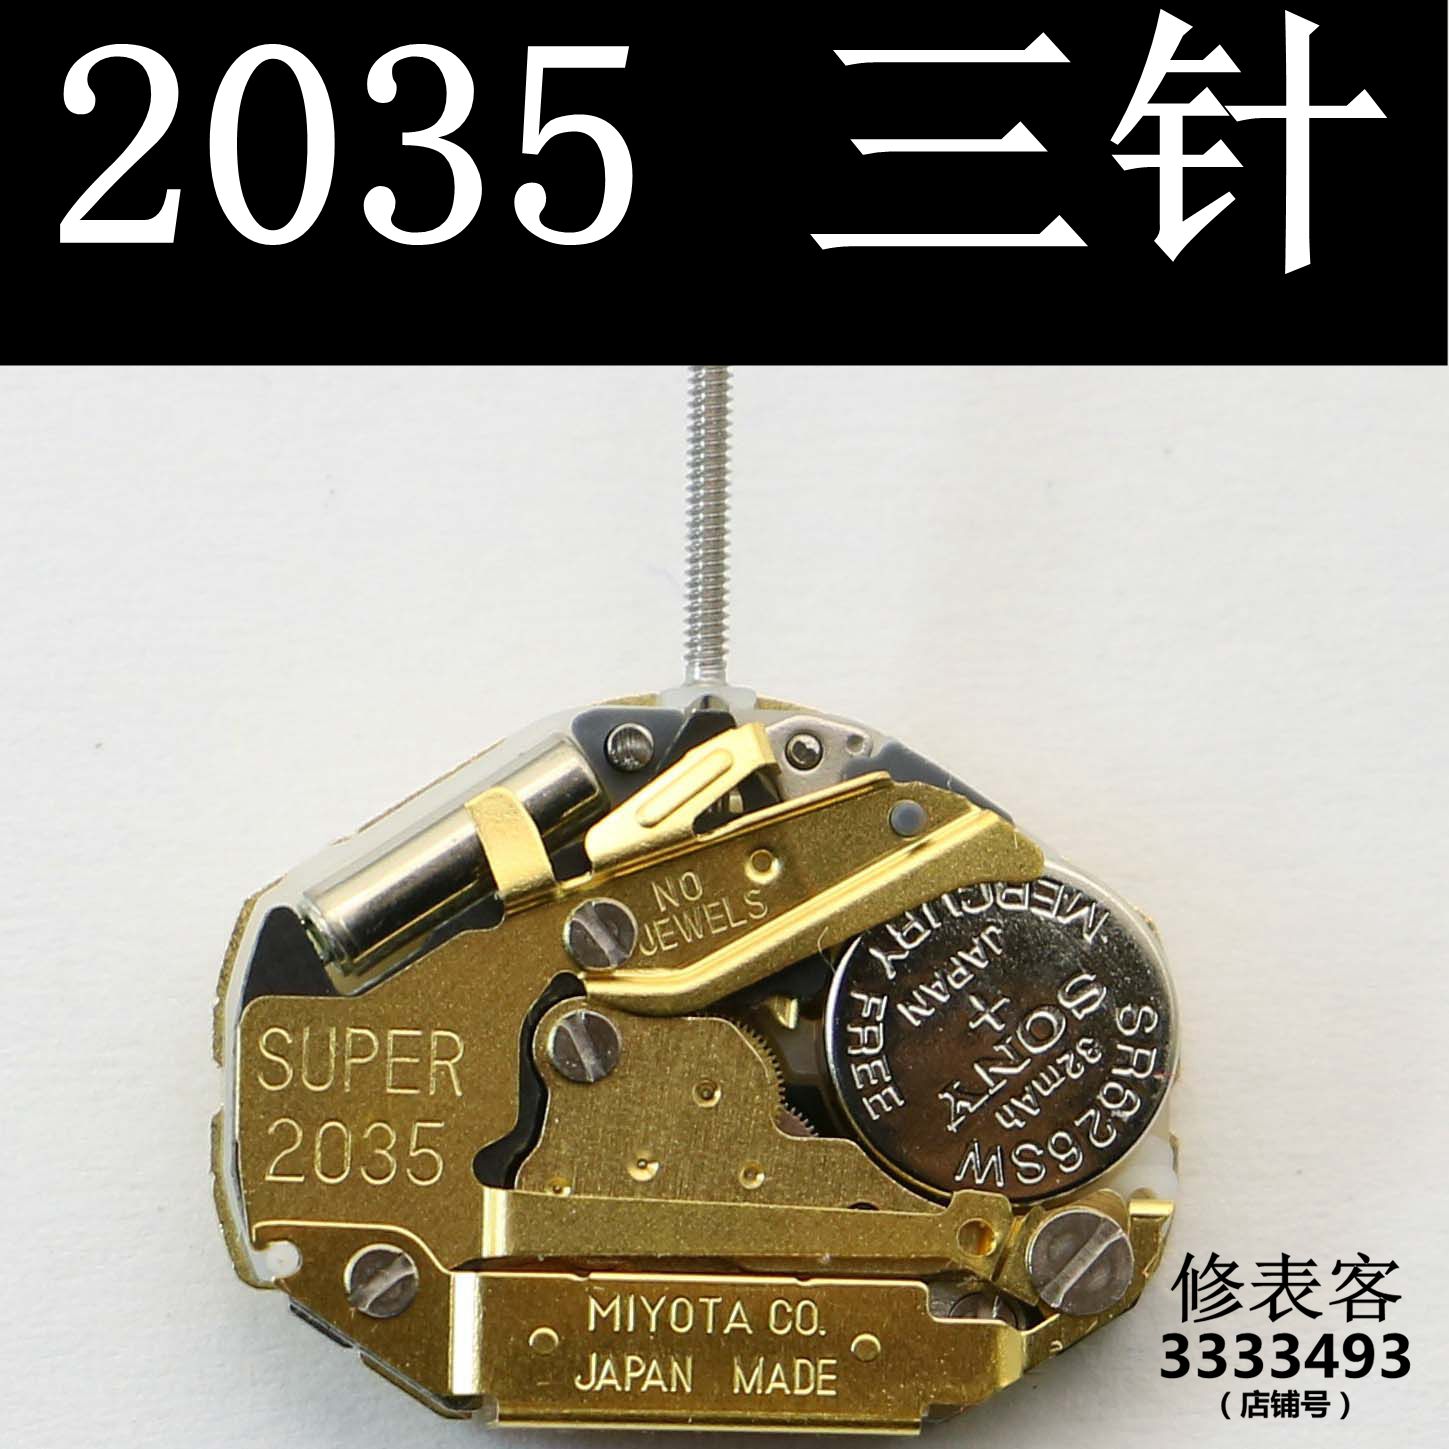 2035สามเข็มเครื่องสีเหลืองไม่มีปฏิทินควอตซ์แกนเครื่องอุปกรณ์เสริมนาฬิกาญี่ปุ่นแกนเครื่อง